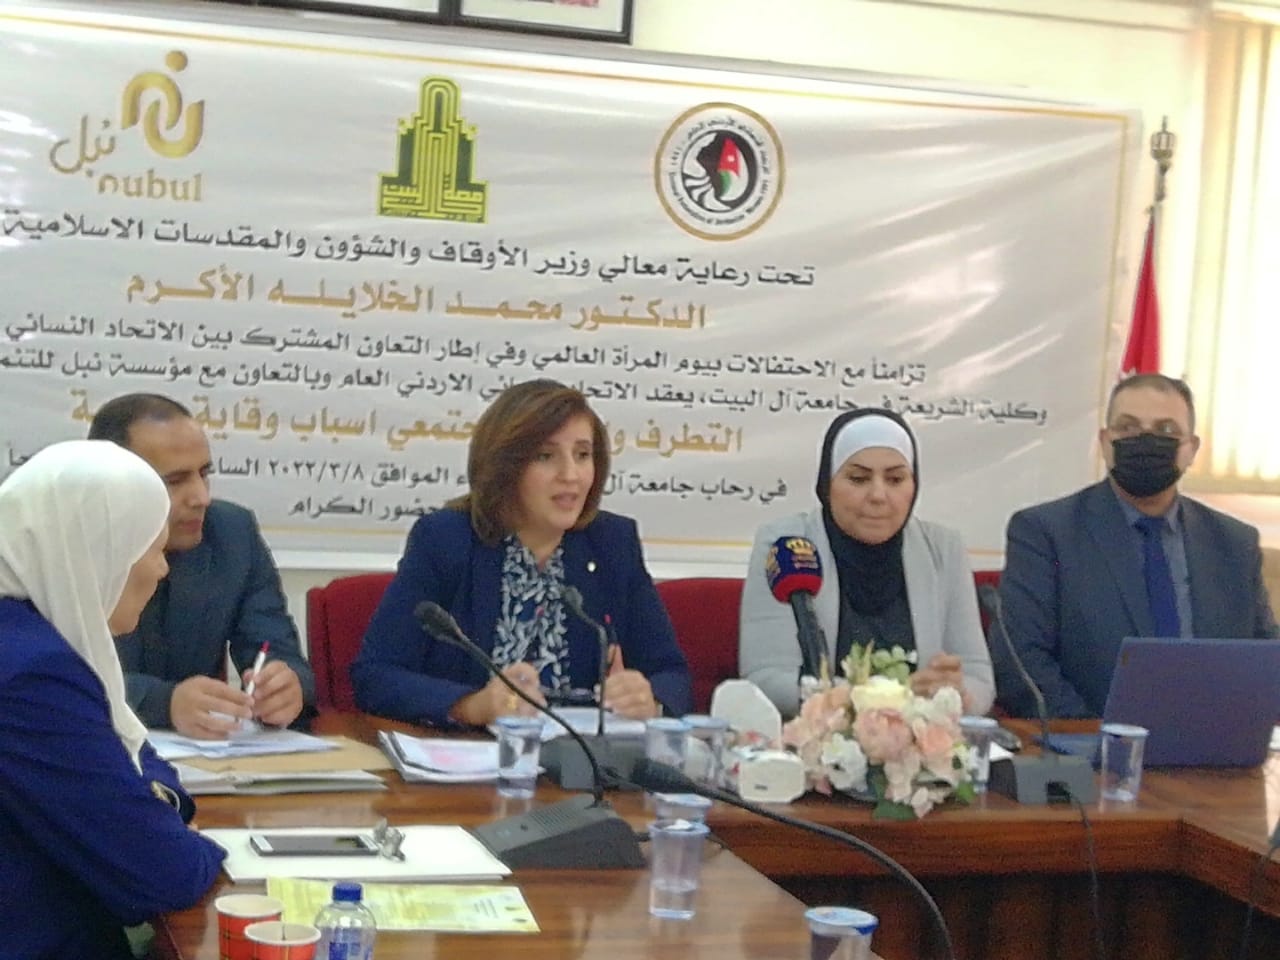  الاتحاد النسائي الأردني  ومؤسسة نبل للتنمية والتدريب ينظمان مؤتمر "التطرف والعنف المجتمعي، أسباب، وقاية، مواجهة 